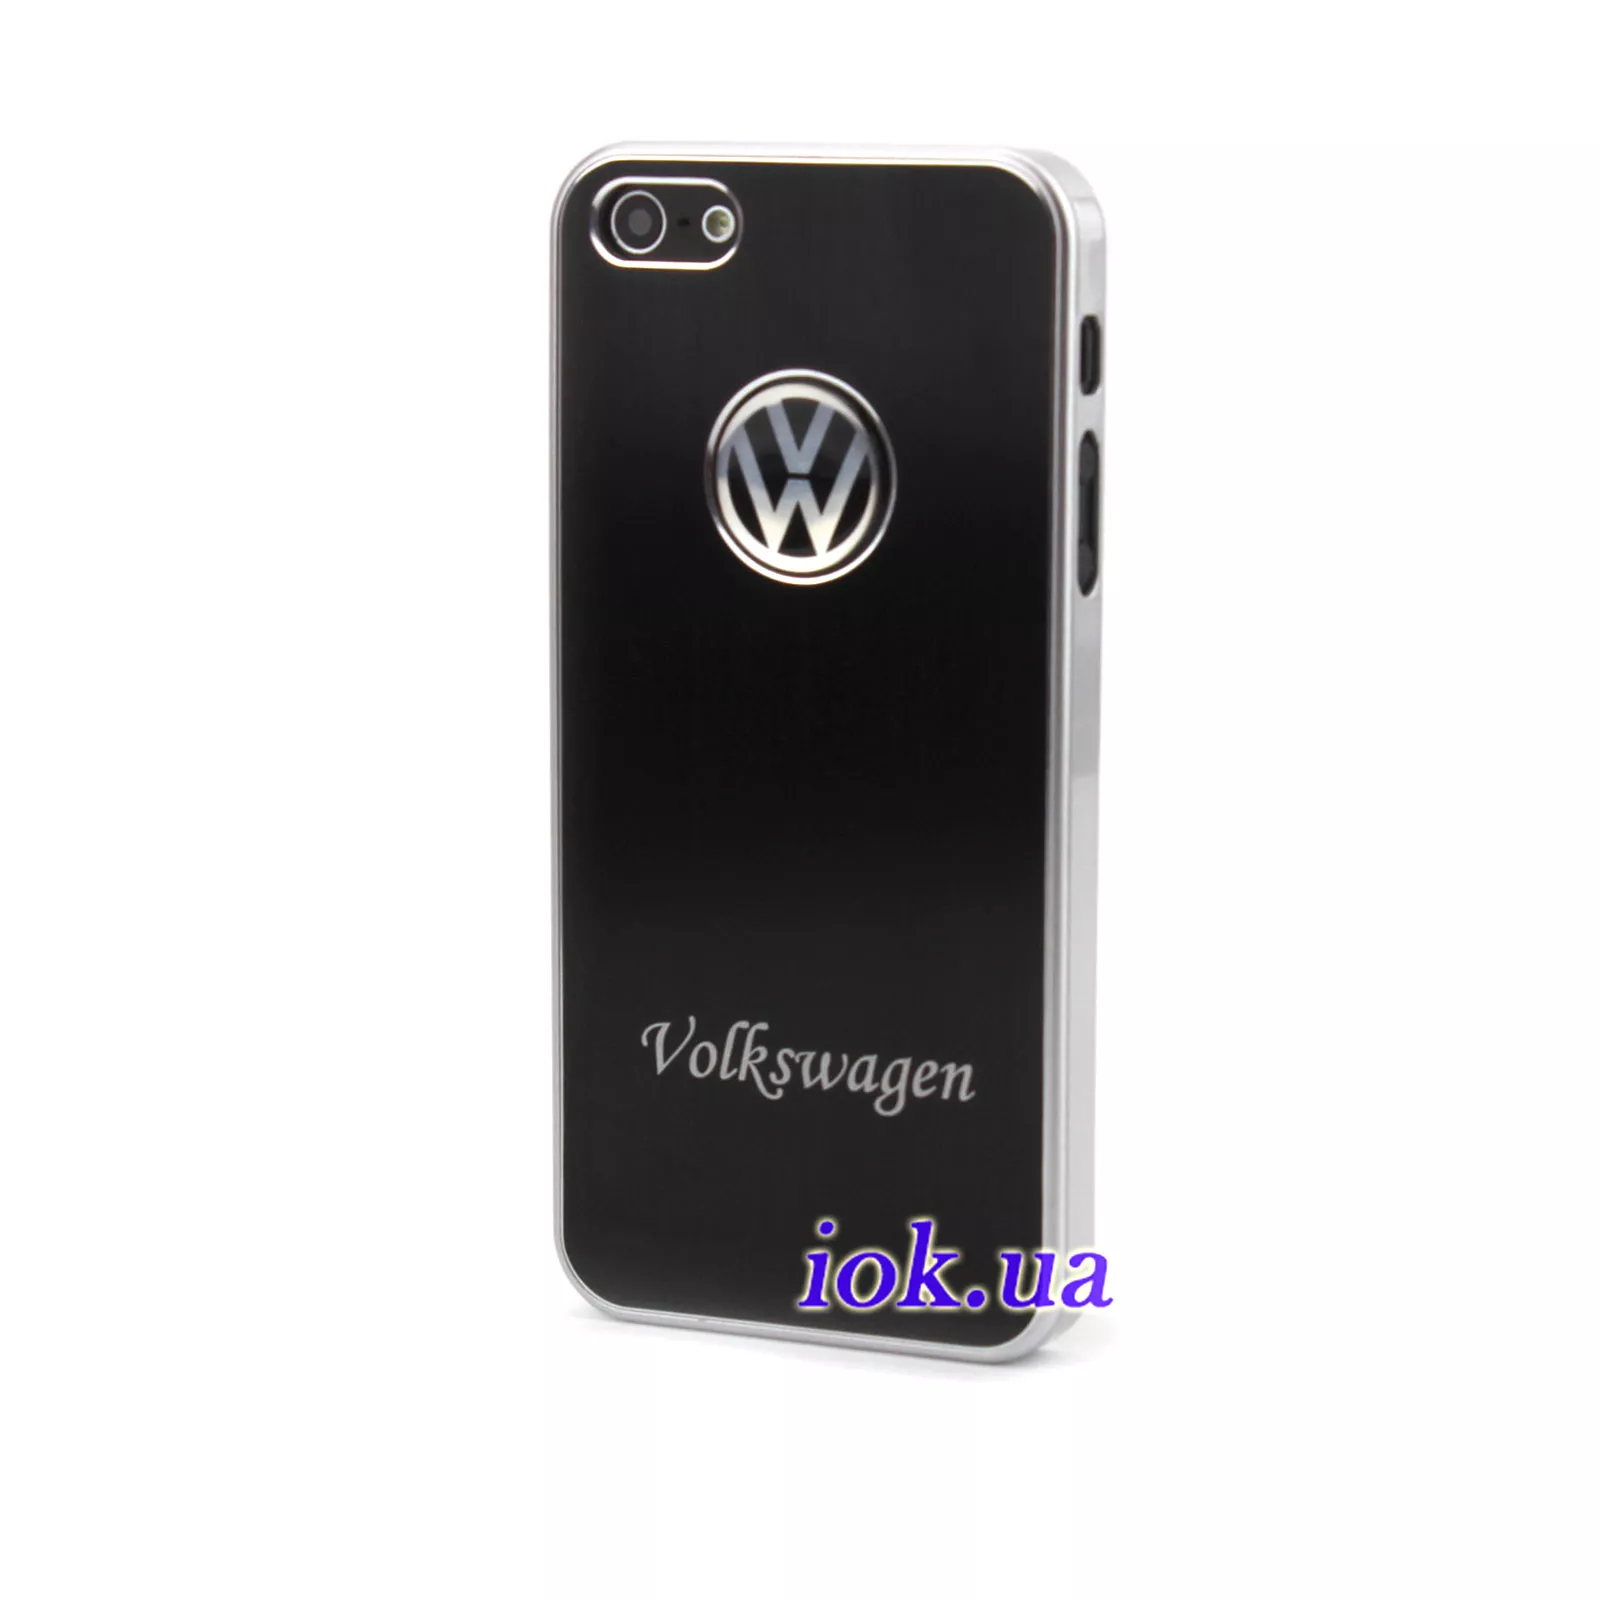 Черный чехол для iPhone 5/5S - Volkswagen